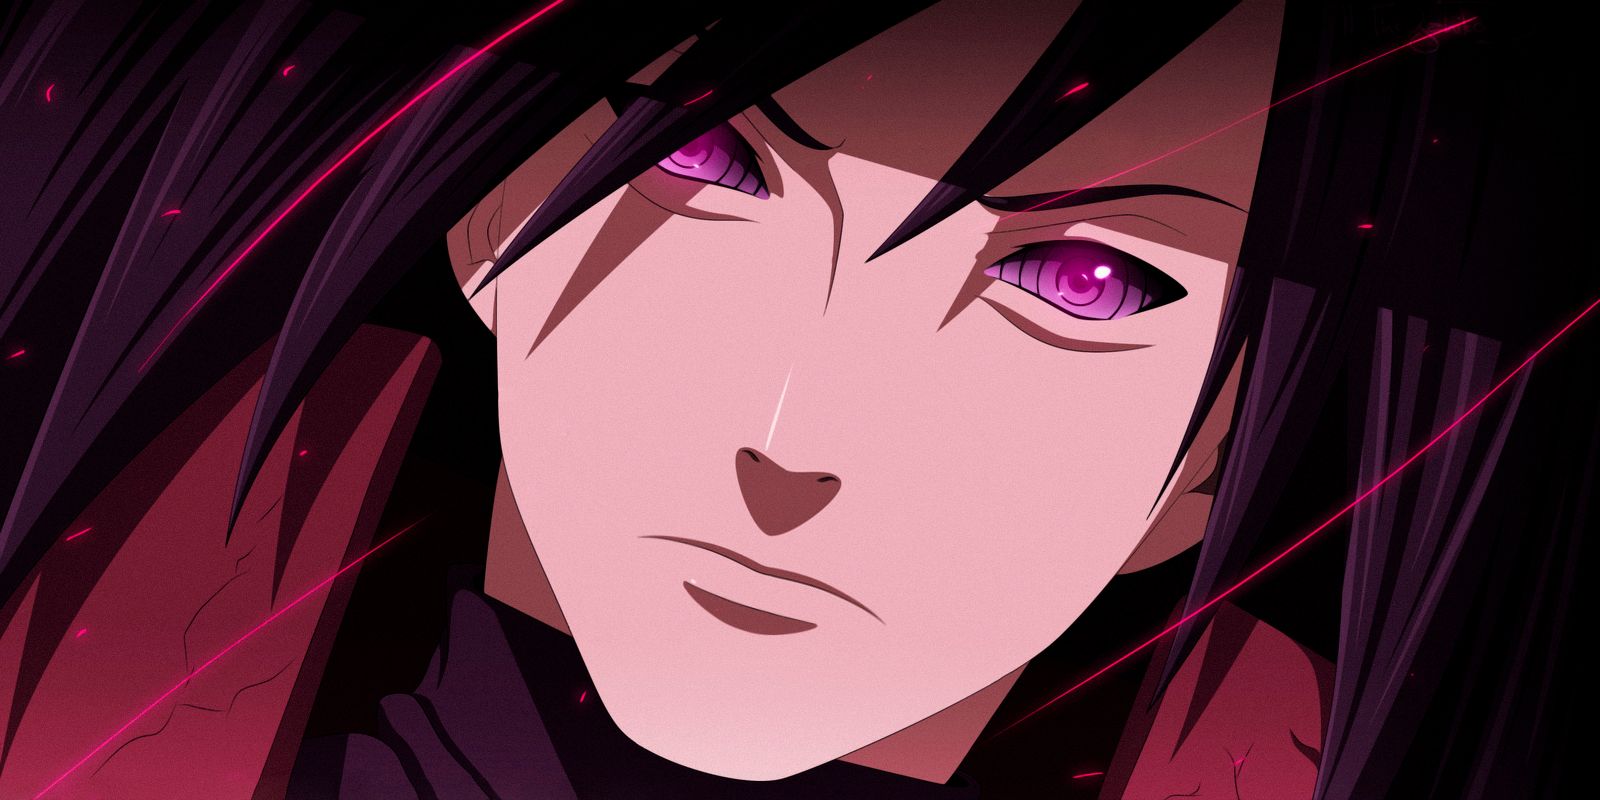 Madara Uchiha from Naruto glares in a closeup